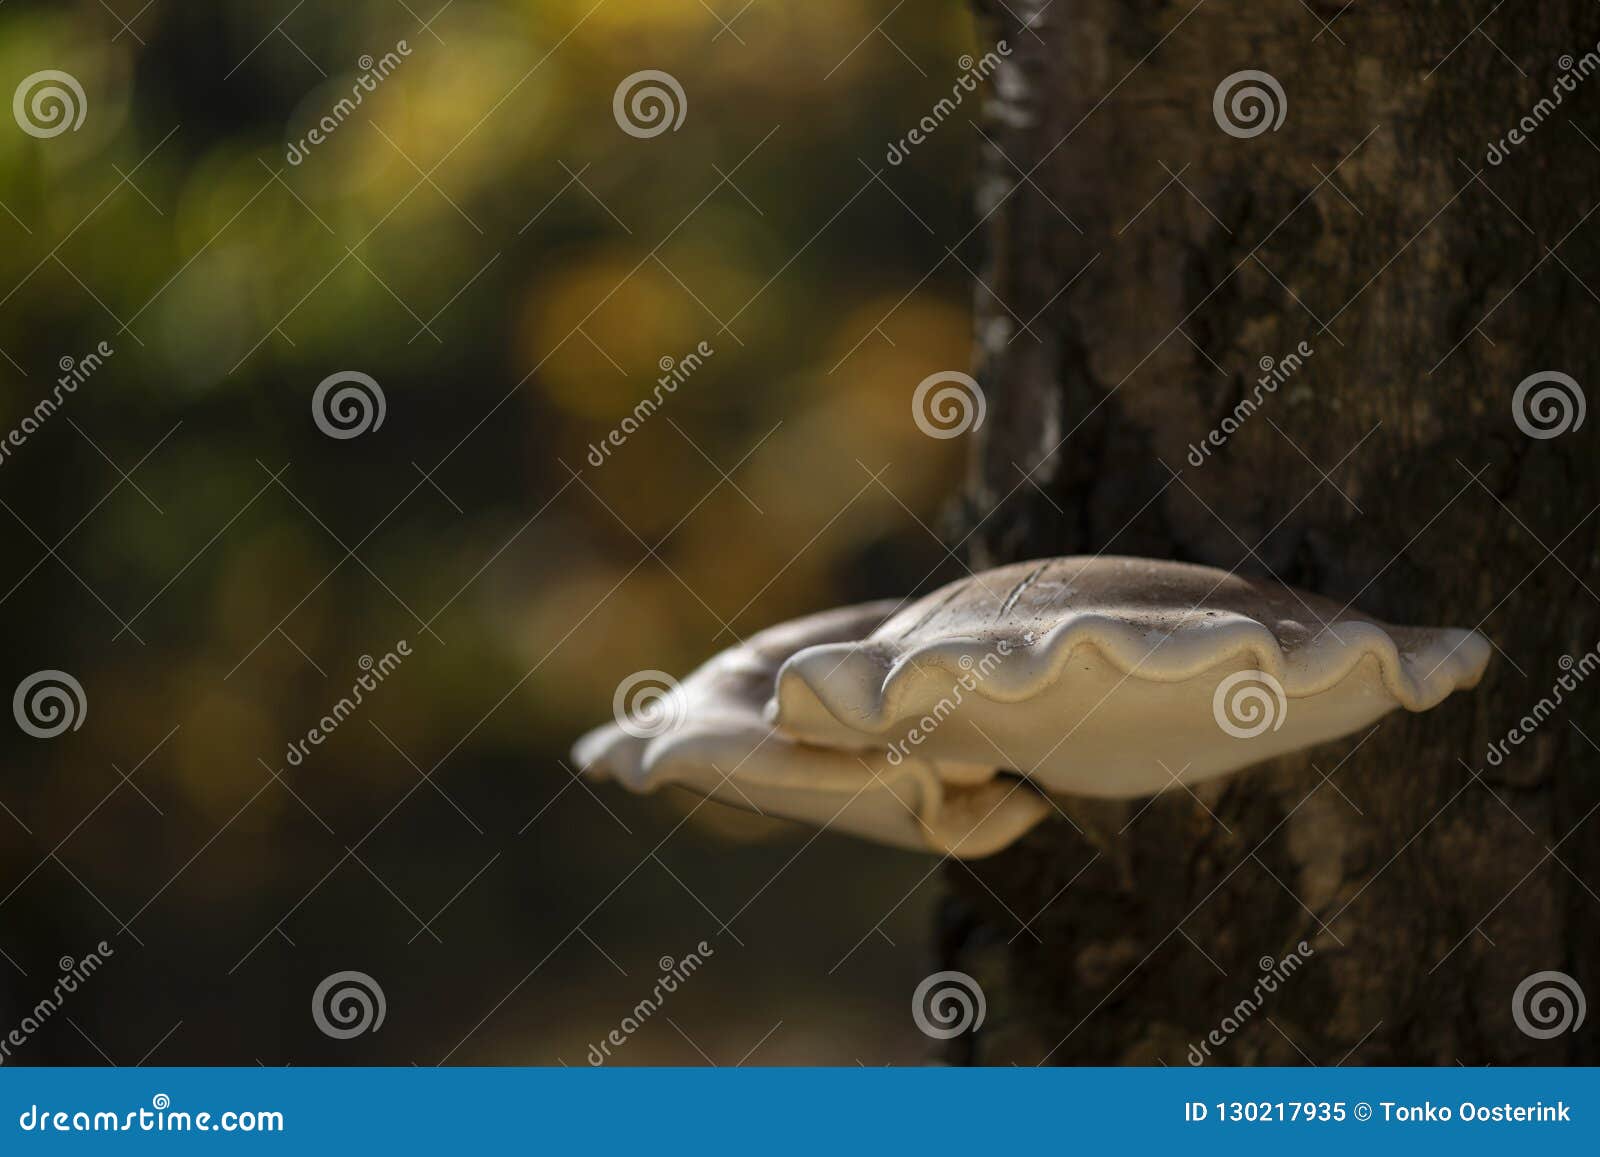 birch mushroom piptoporus betulinus